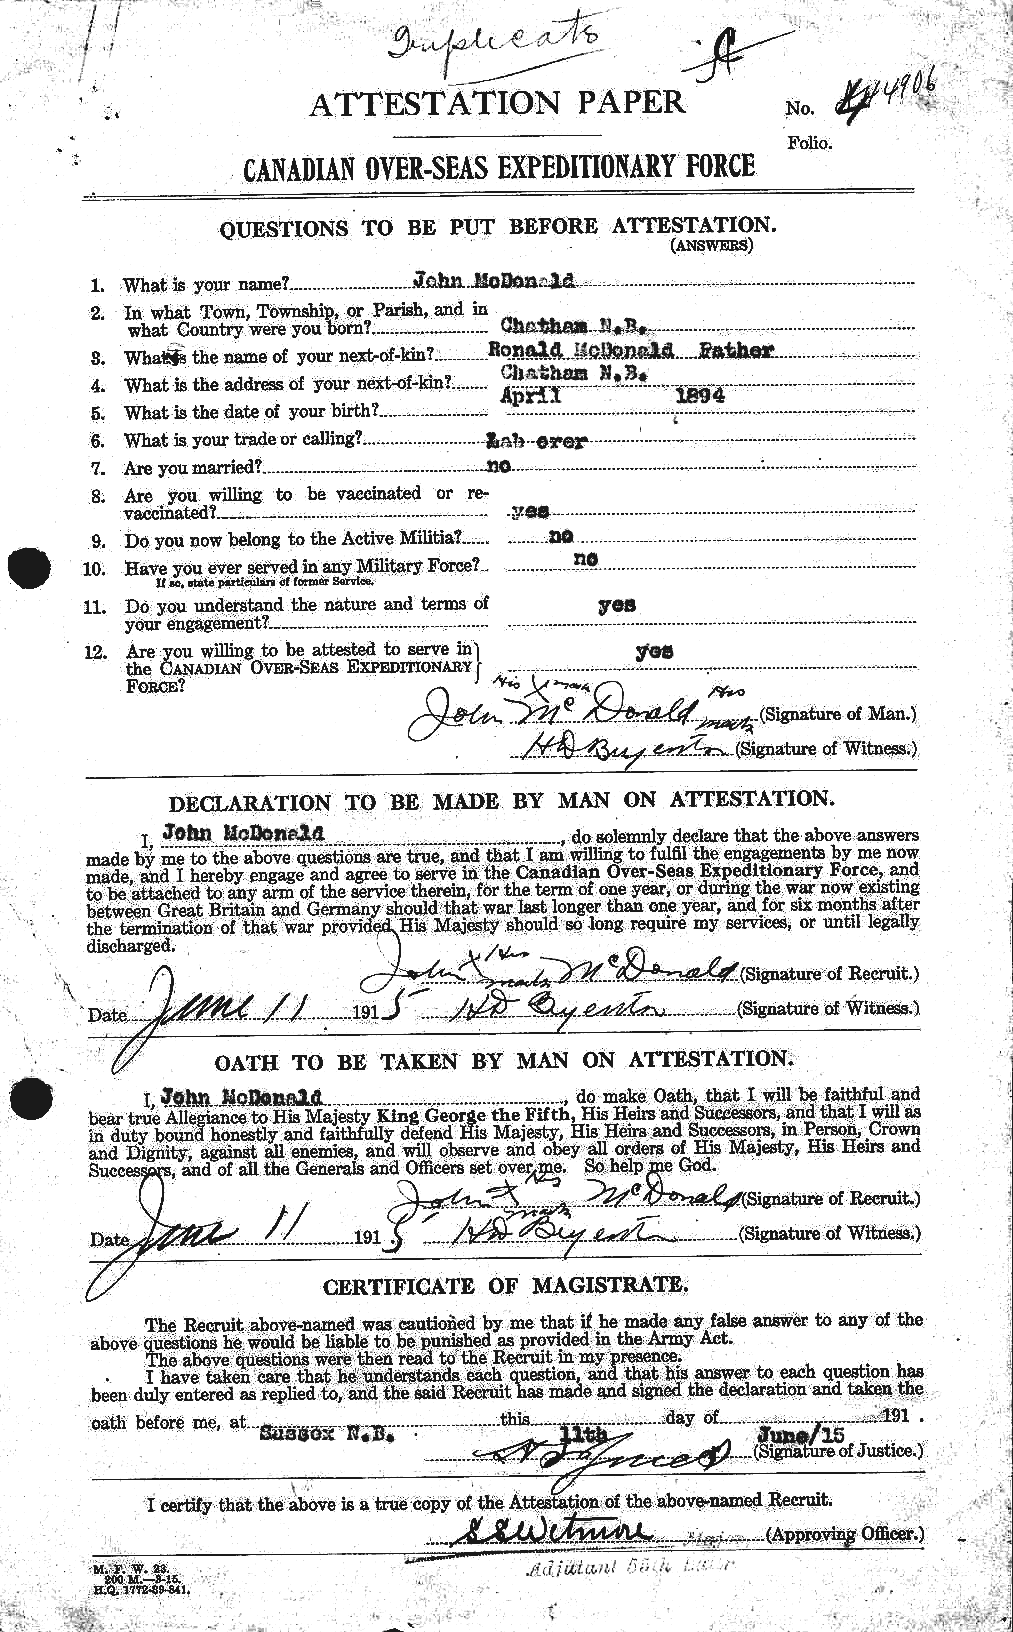 Dossiers du Personnel de la Première Guerre mondiale - CEC 532223a